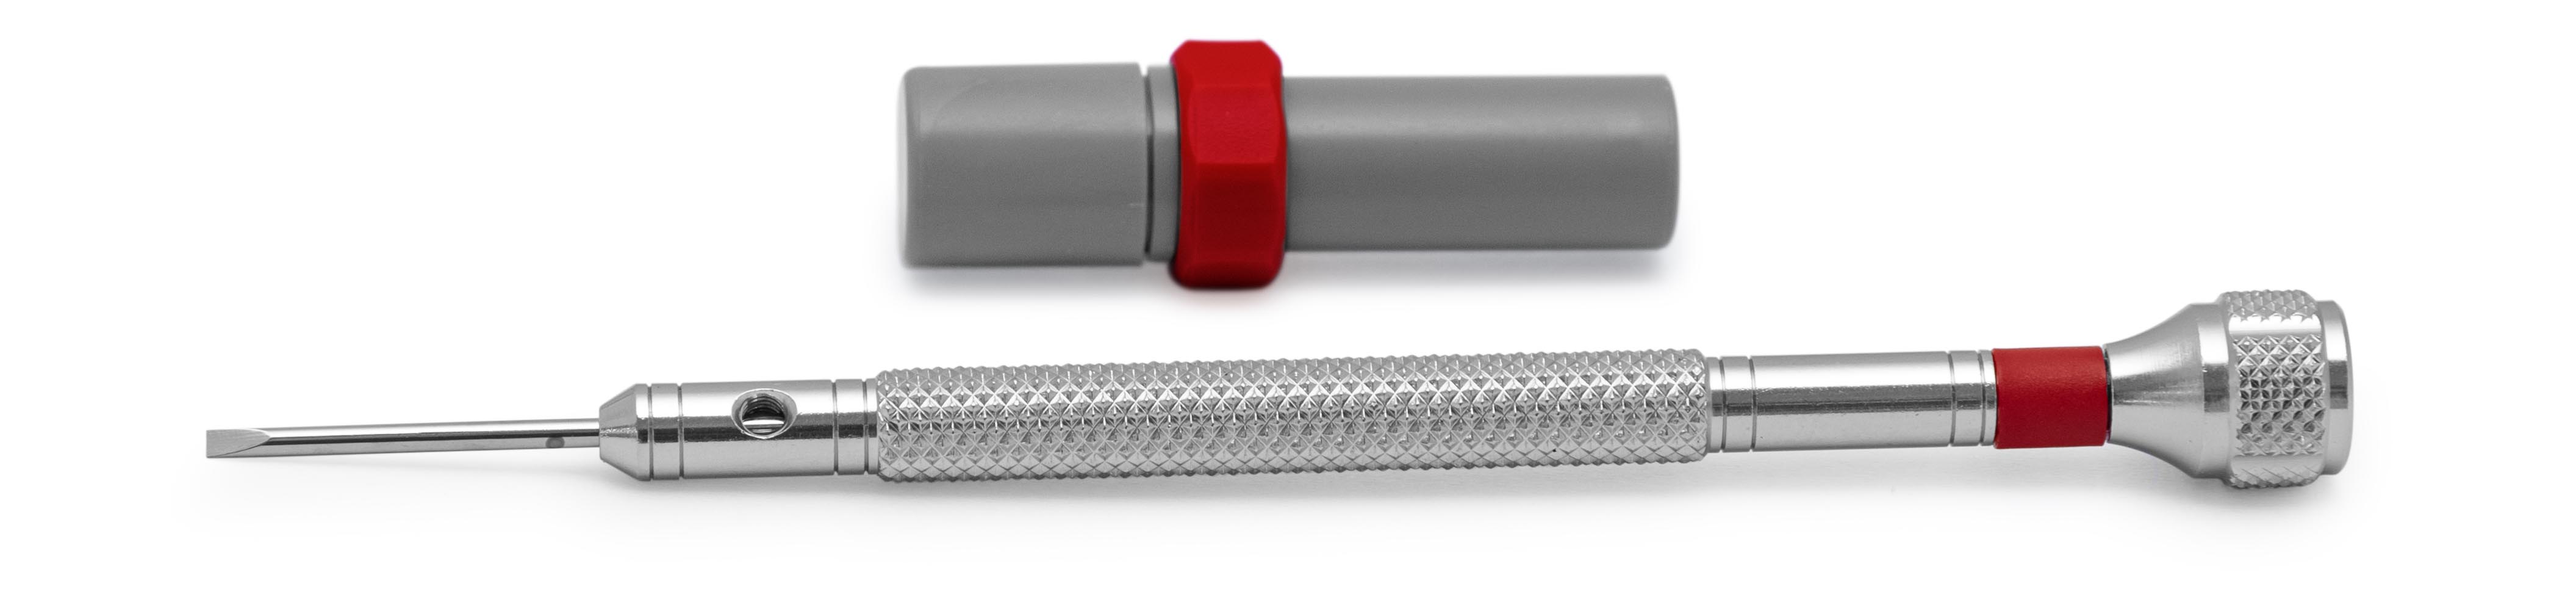 Bergeon 30080-F tournevis, mèche 1,2 mm, rouge, avec mèches de rechange